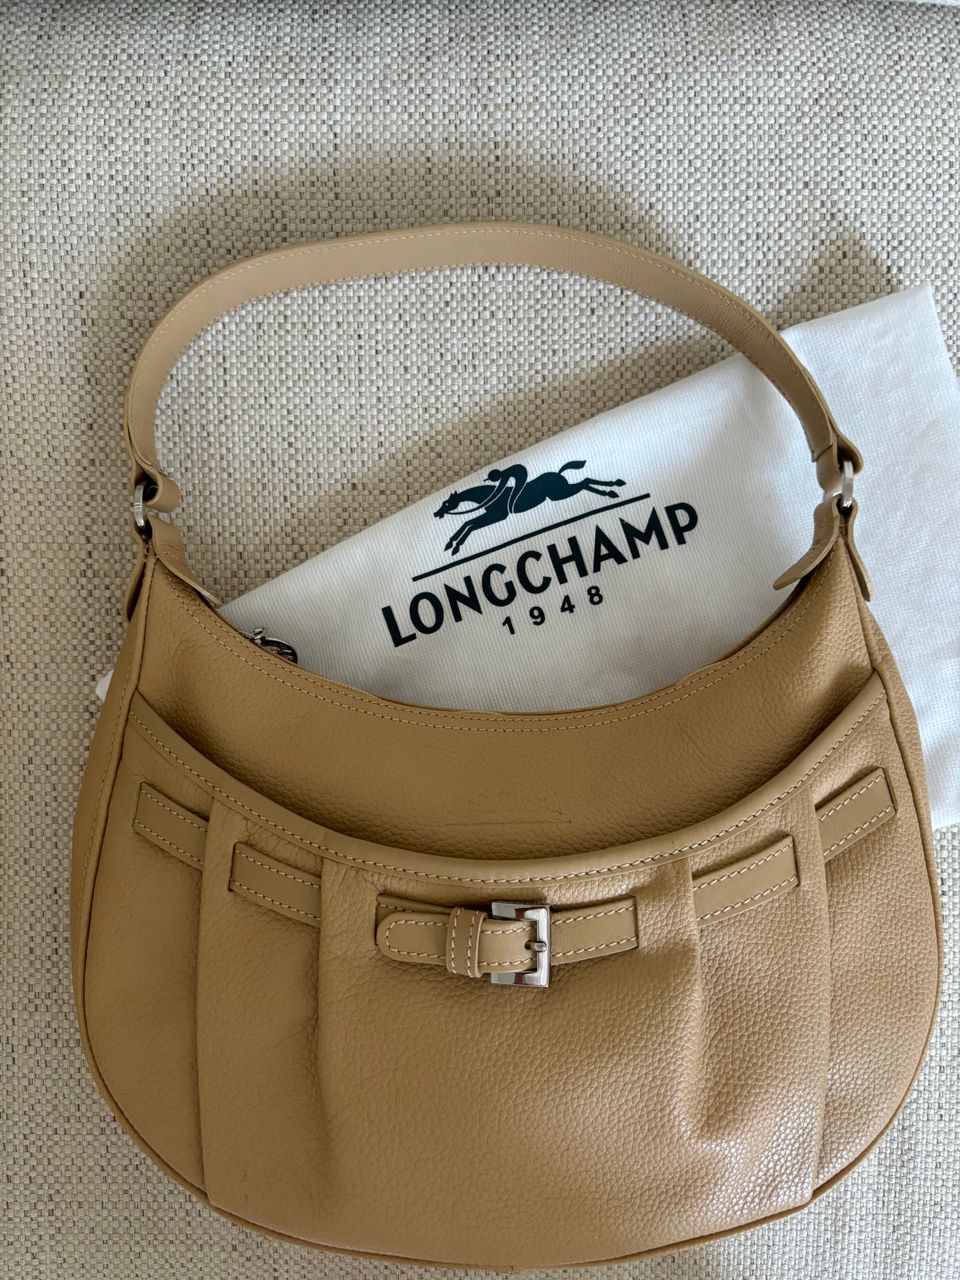 Longchamp käsilaukku kaunis beige, kunto uudenveroinen